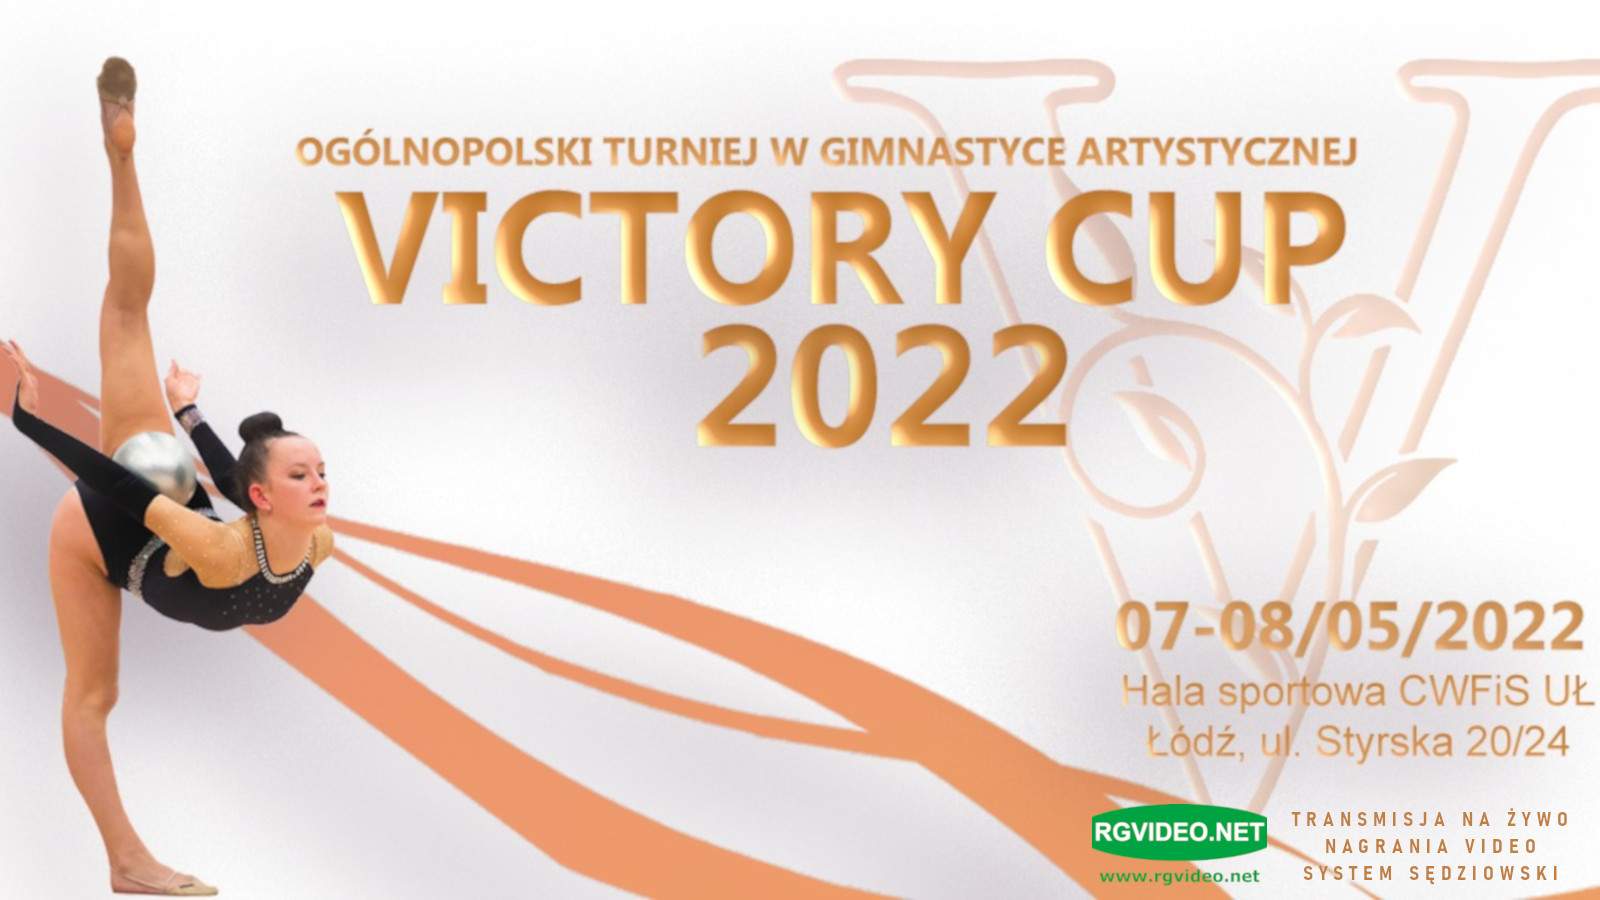 VICTORY CUP 2022 - OGOLNOPOLSKI TURNIEJ W GIMNASTYCE ARTYSTYCZNEJ